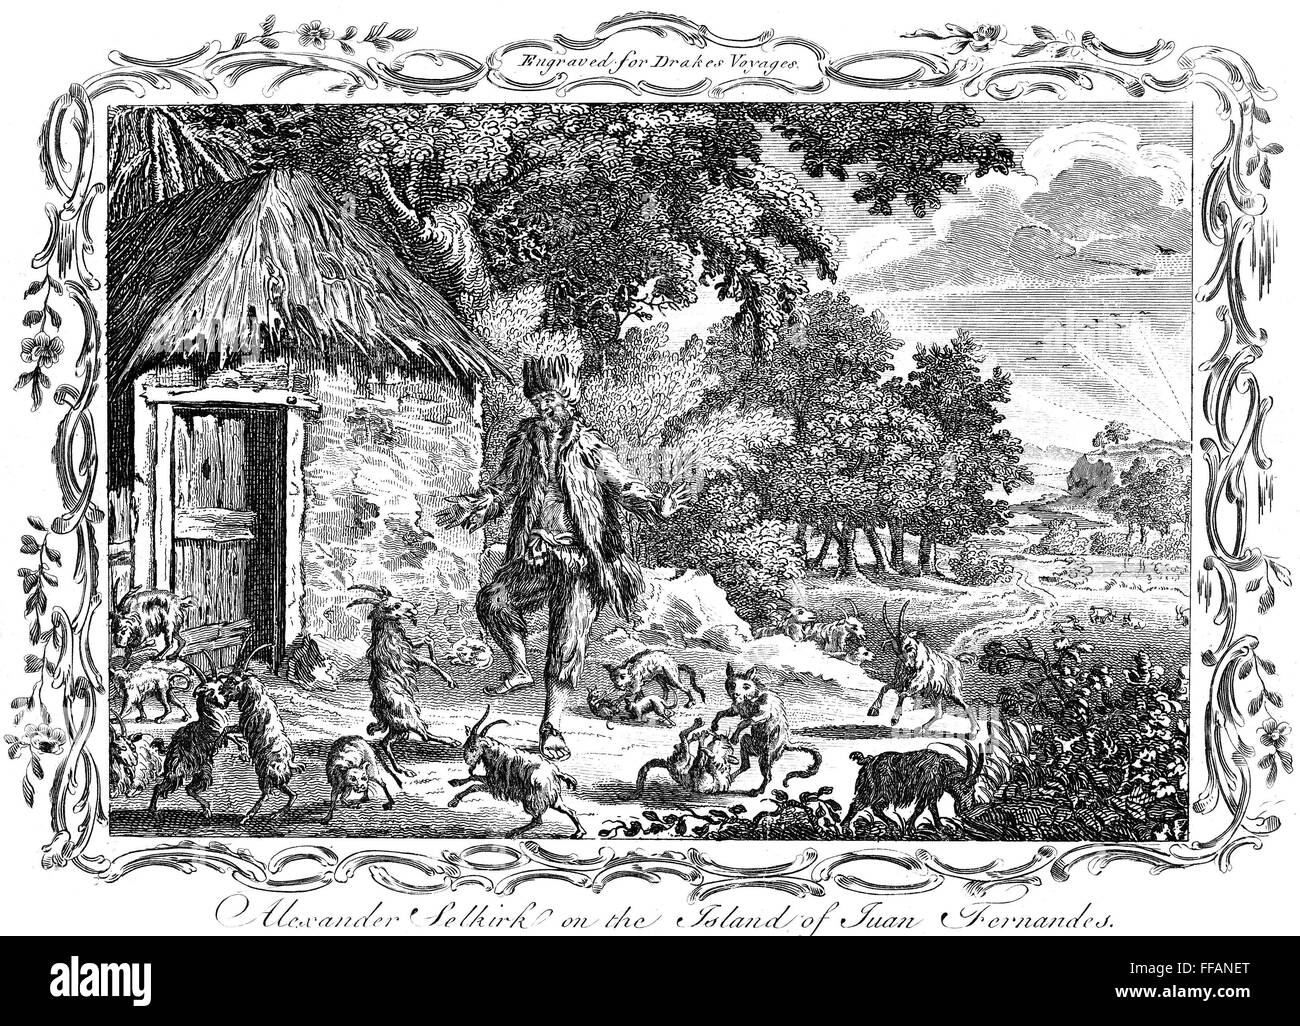 ALEXANDER SELKIRK /n(1676-1721). Le marin écossais sur lequel Daniel Defoe fonde son caractère de Robinson Crusoé. Selkirk au Mas-a-Tierra où il vivait seul à partir de 1704-1709. Gravure anglaise, 18ème siècle. Banque D'Images